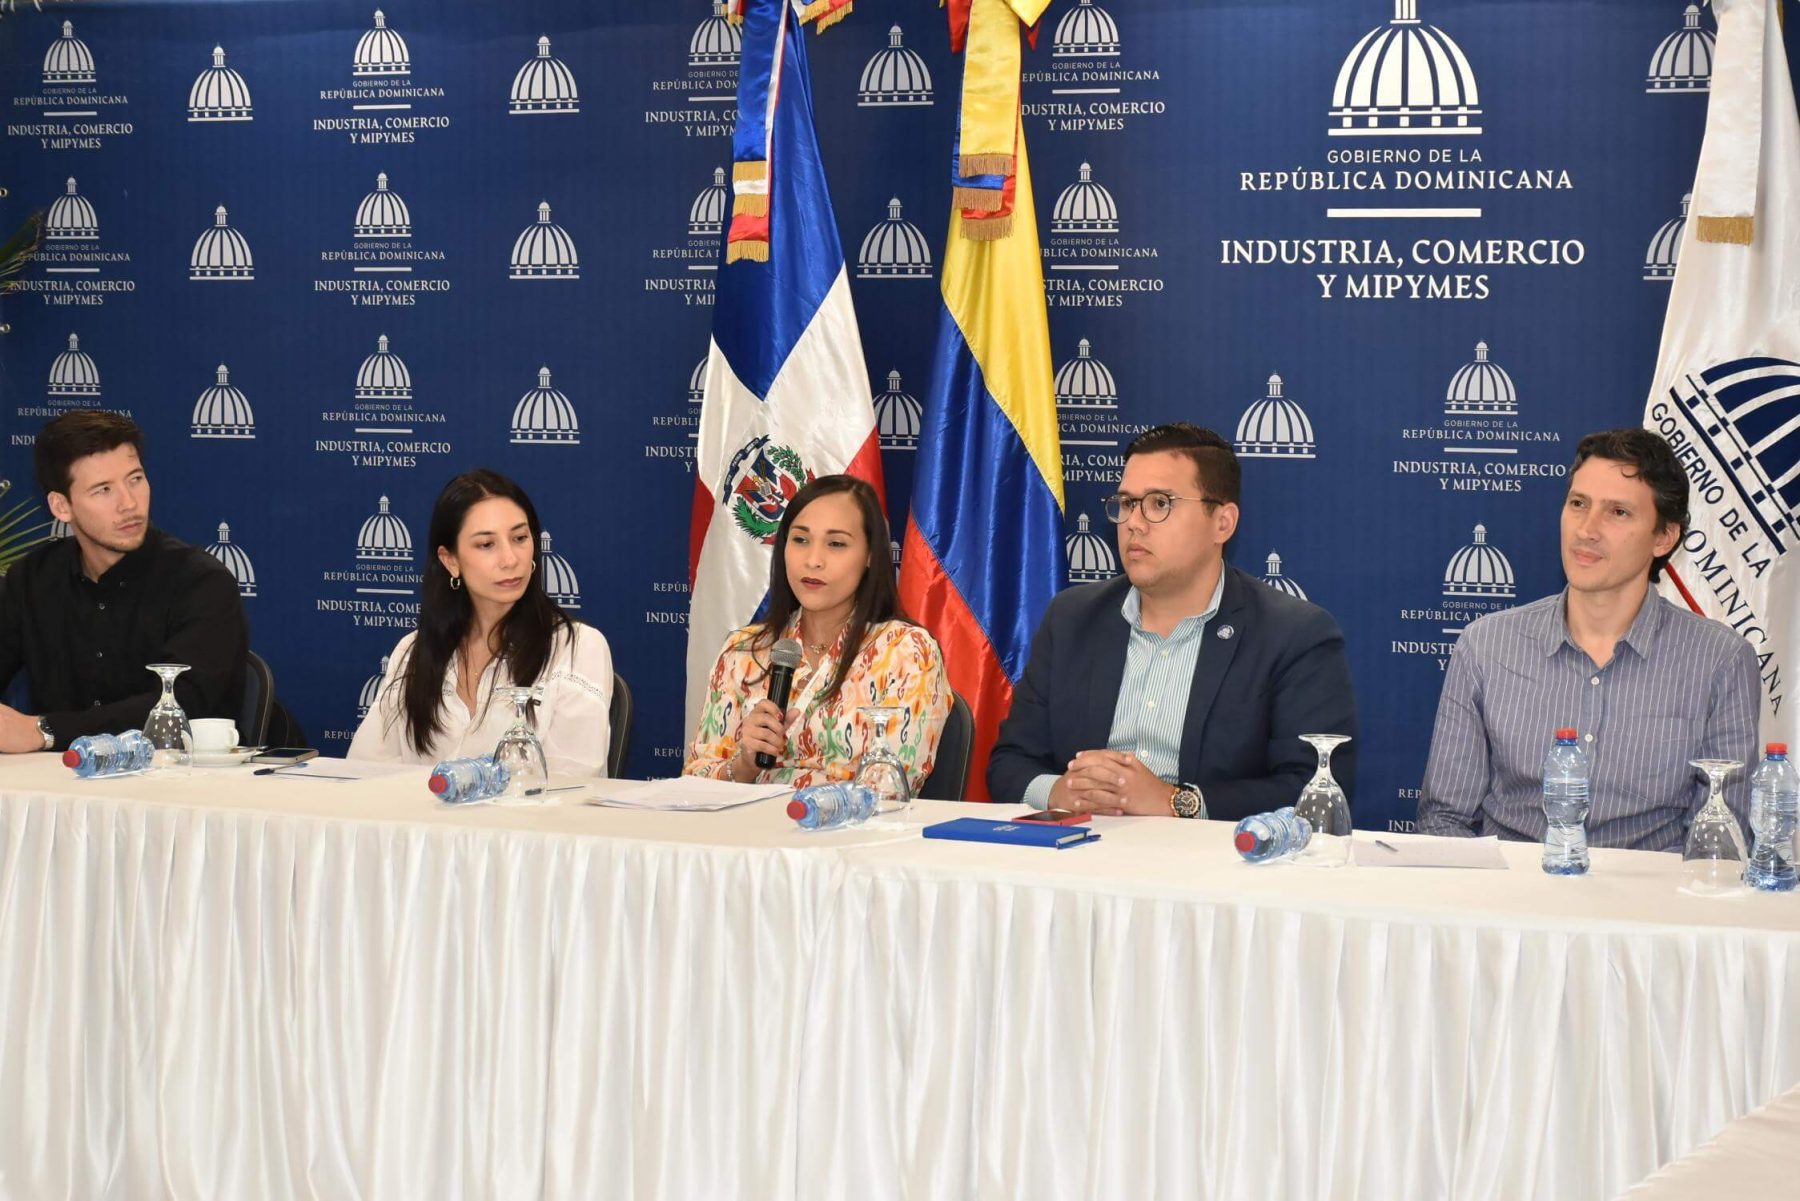 La directora de Cooperación Bilateral, Clara Aquino, consideró “fructífero” el intercambio de experiencias y diálogos entre representantes de la industria de la moda de la República Dominicana e INEXMODA de Colombia.